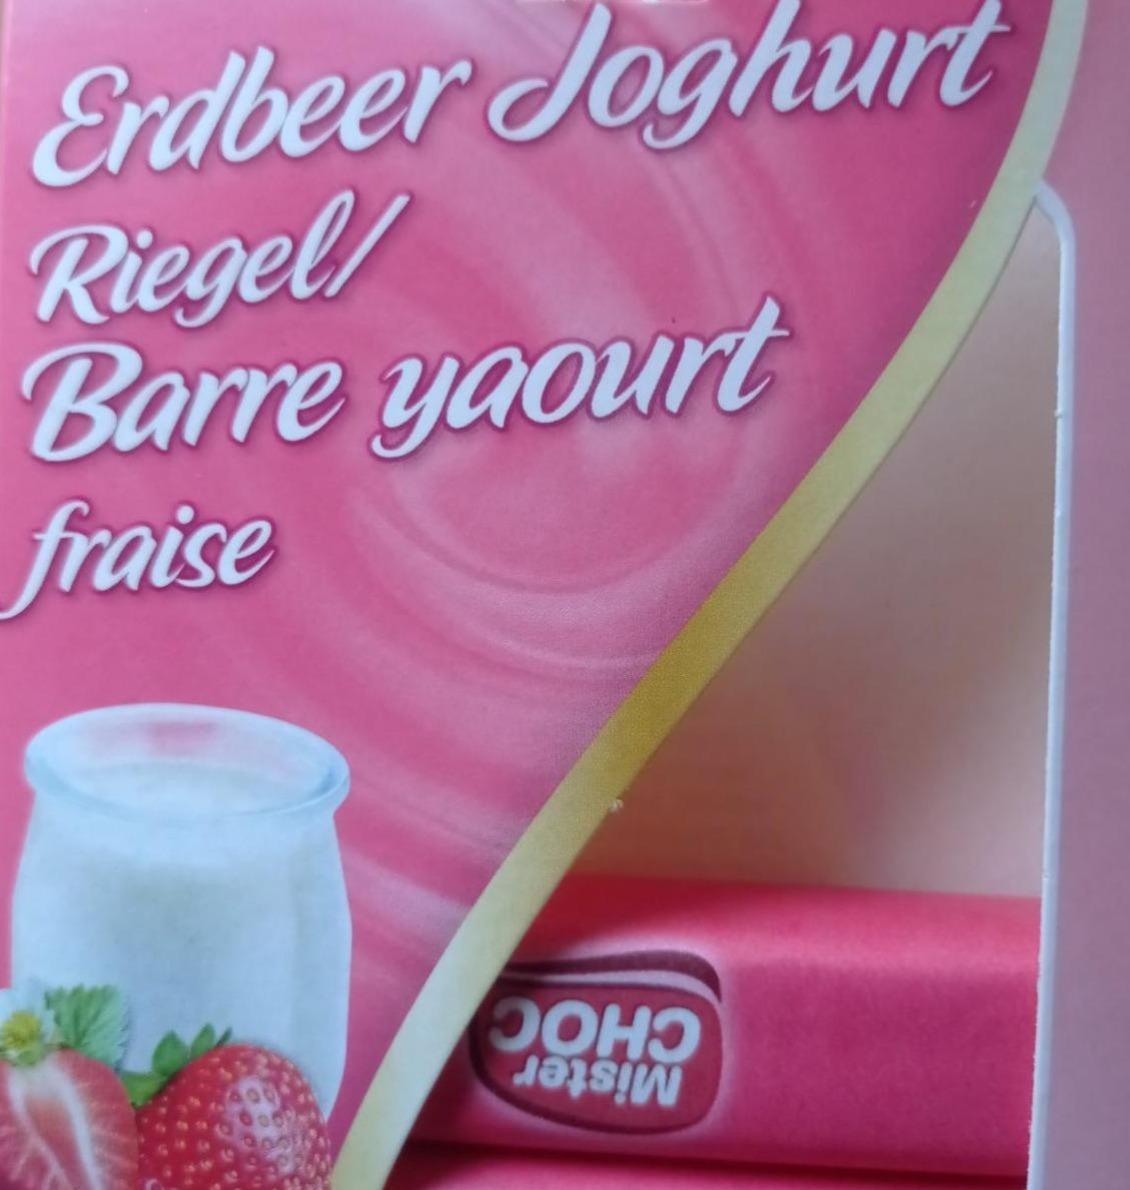 Фото - Шоколад Erdbeer Joghurt Riegel Mister Choc